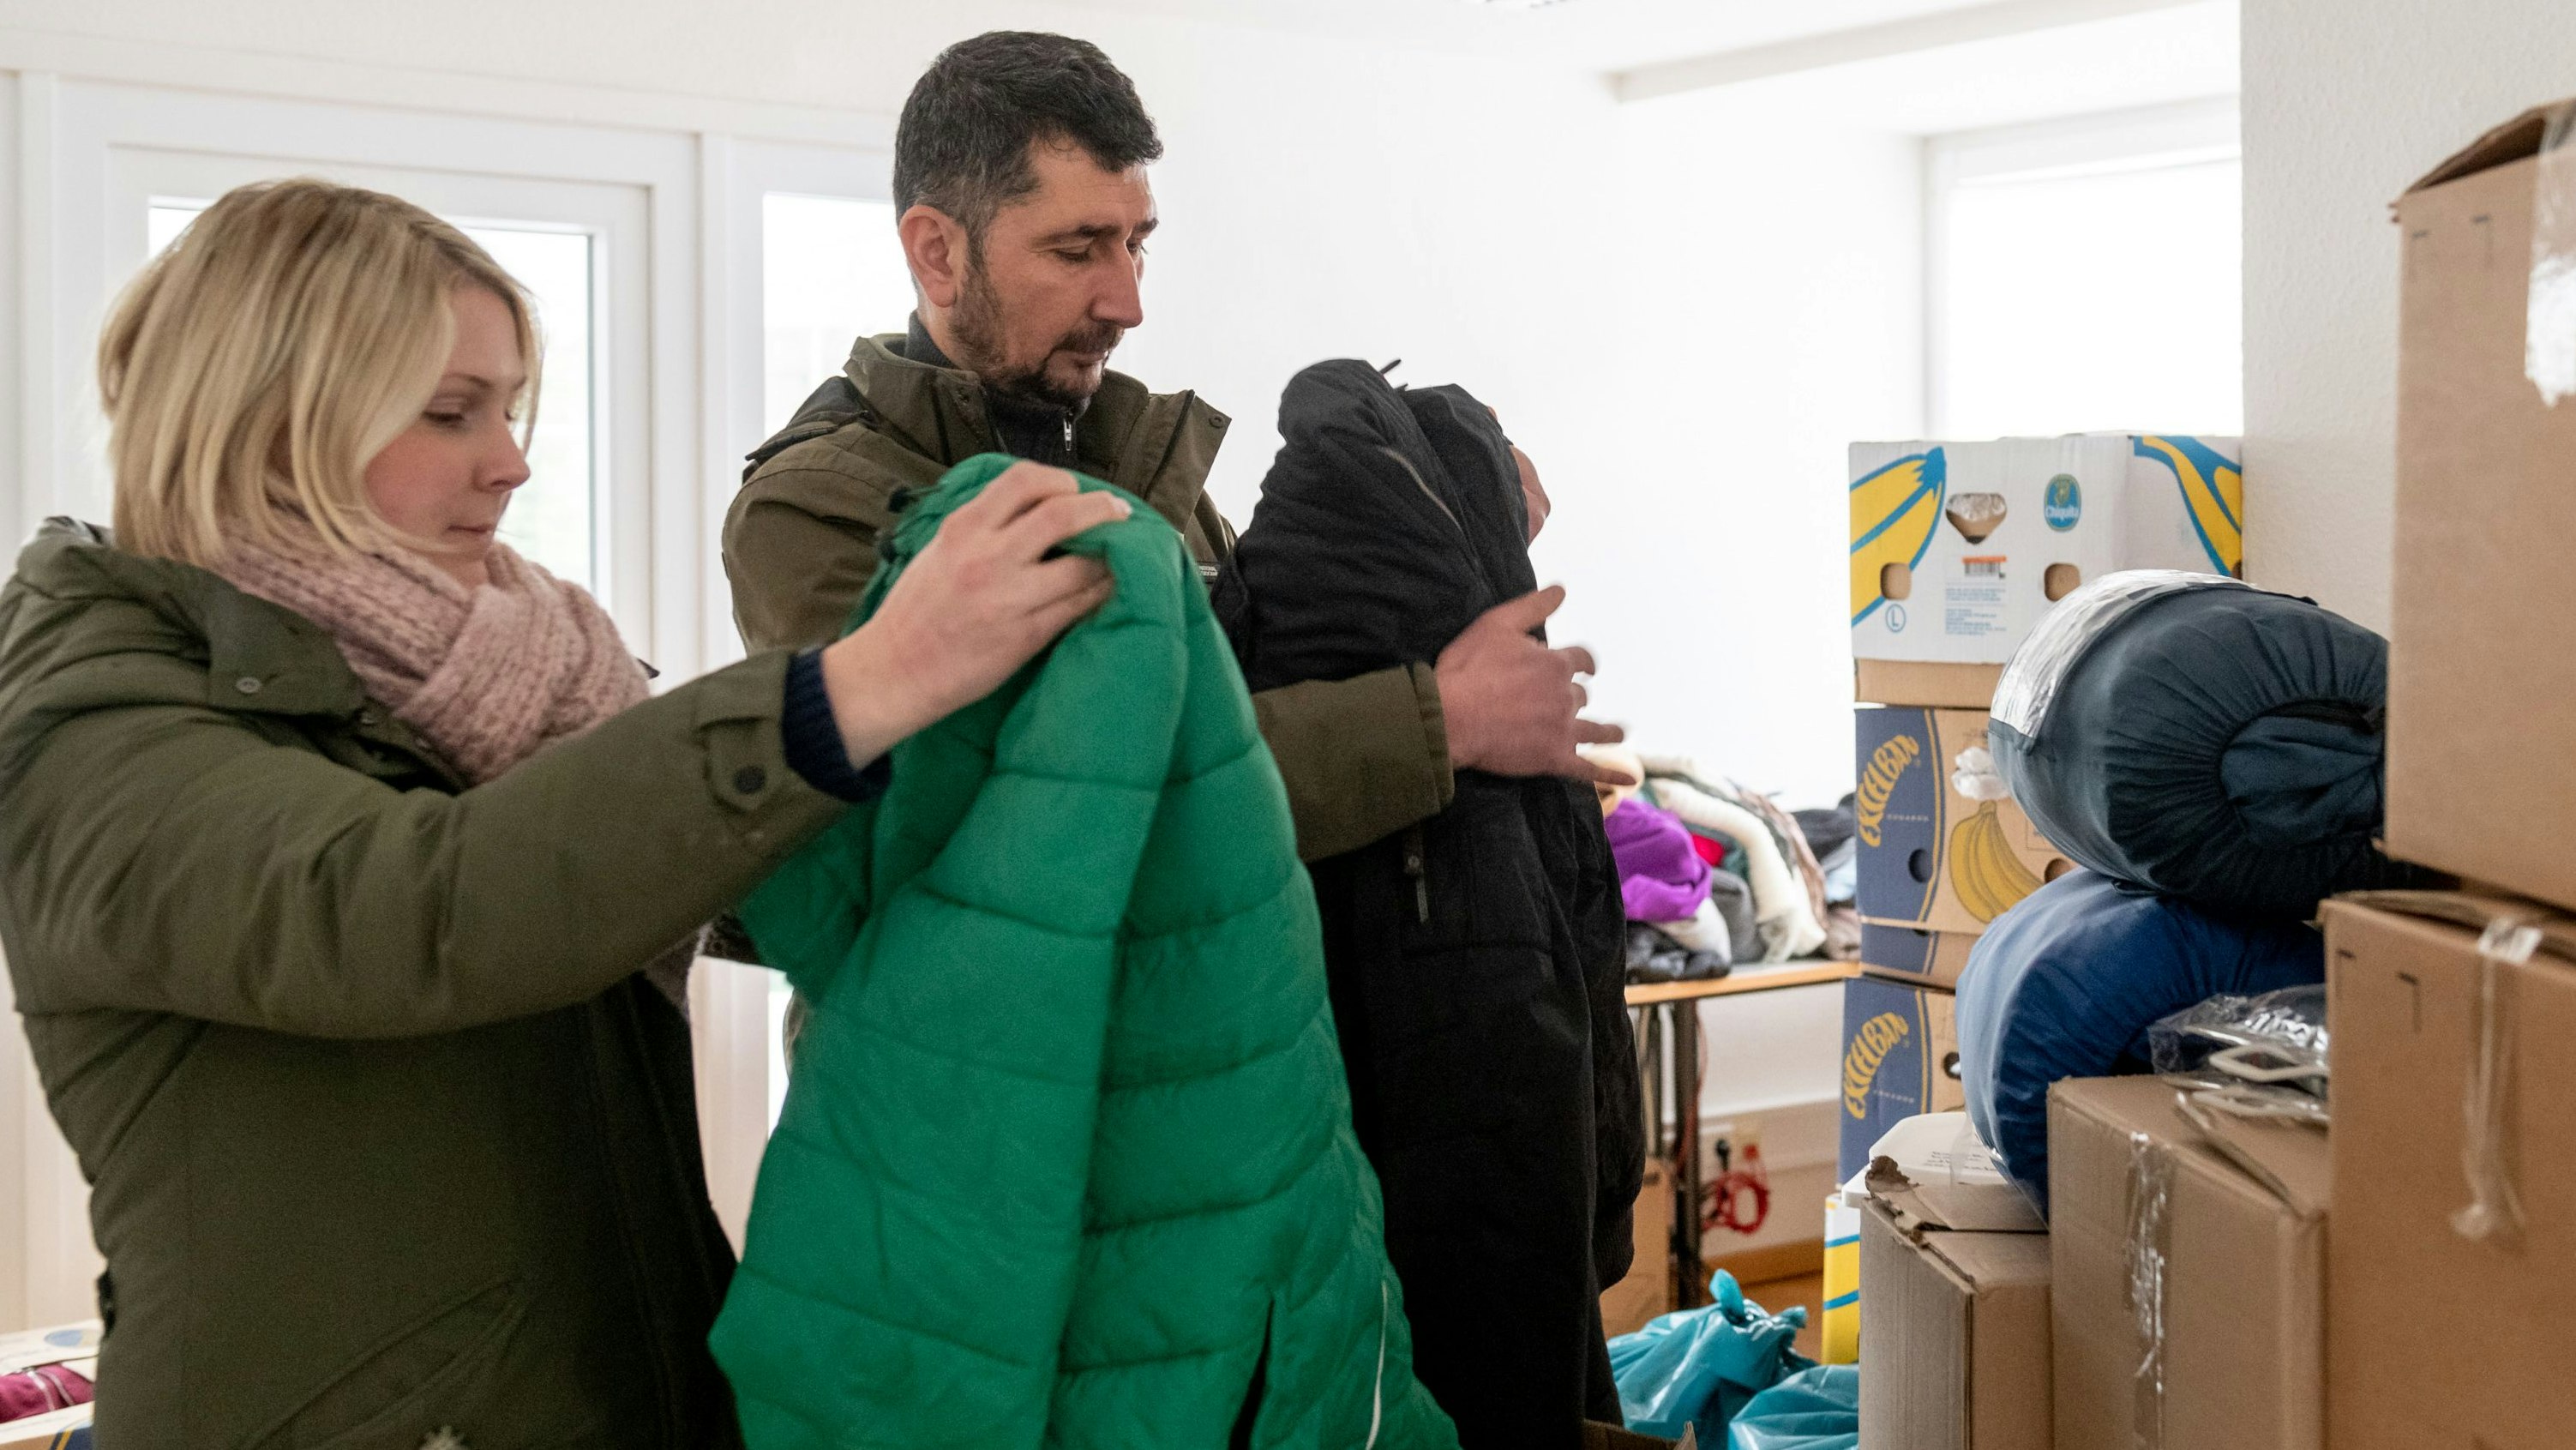 Unerwartet viele Spenden: Christina Voss und Ferdi Karatas packen Kleidung in Kartons. Foto: Chowanietz